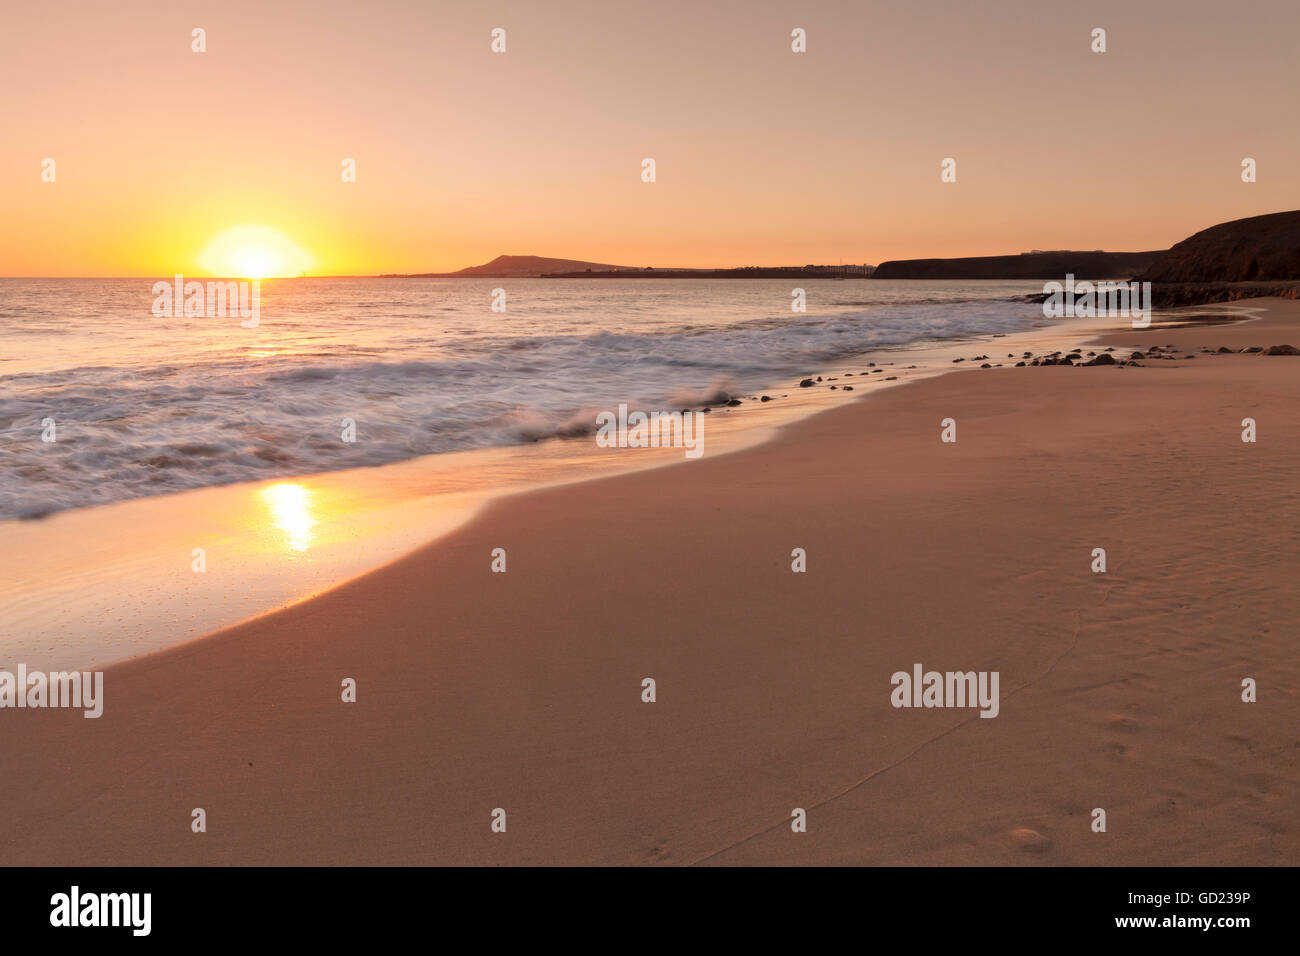 Playa Papagayo-Strand bei Sonnenuntergang, in der Nähe von Playa Blanca, Lanzarote, Kanarische Inseln, Spanien, Atlantik, Europa Stockfoto